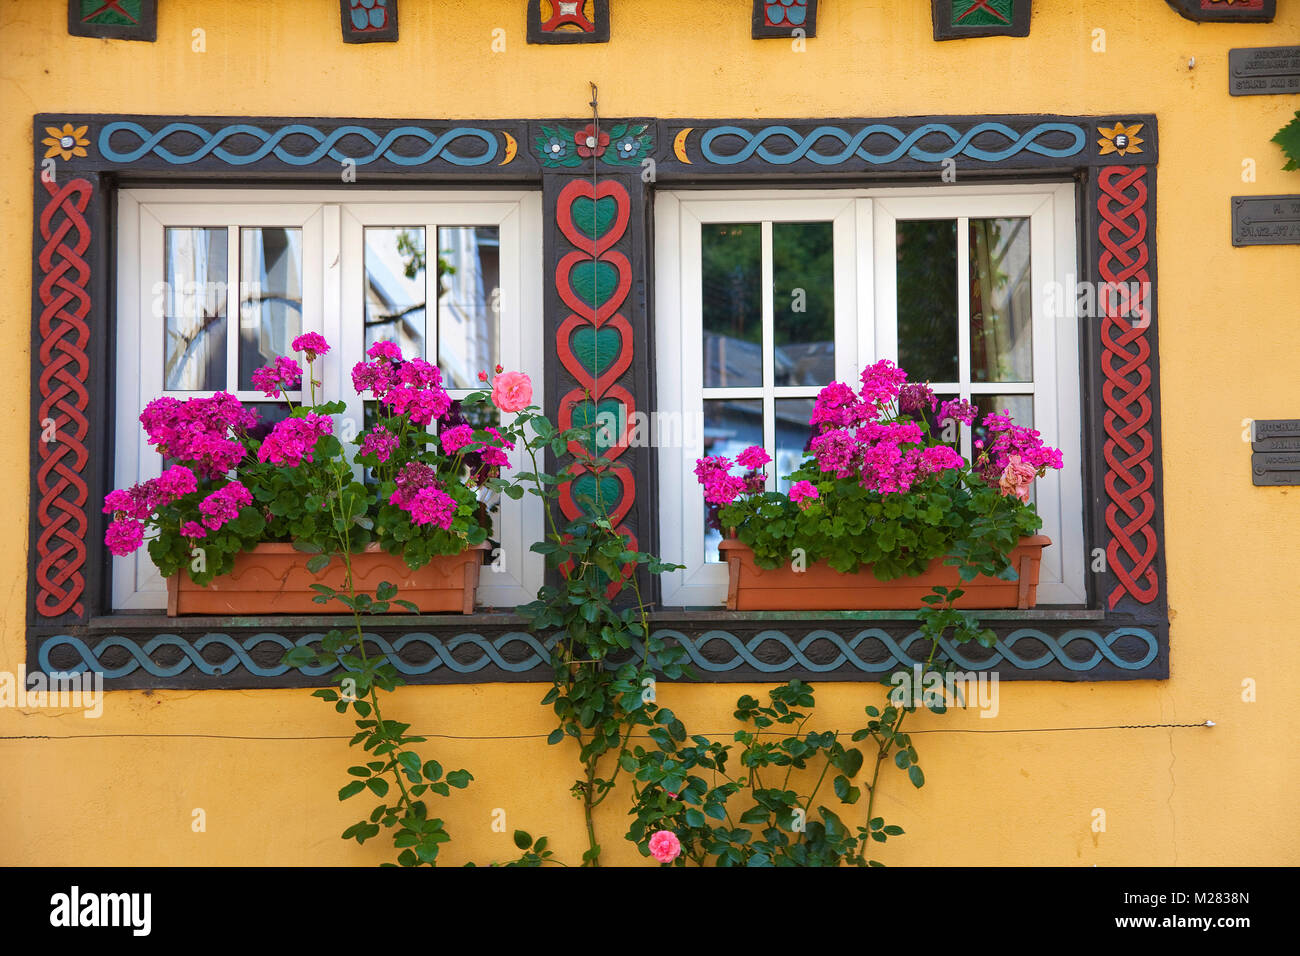 Fenêtres colorées avec des fleurs, façade de maison à l'ancienne ville de Trarbach, Traben-Trarbach, Moselle, rivière, Rhénanie-Palatinat, Allemagne, Europe Banque D'Images